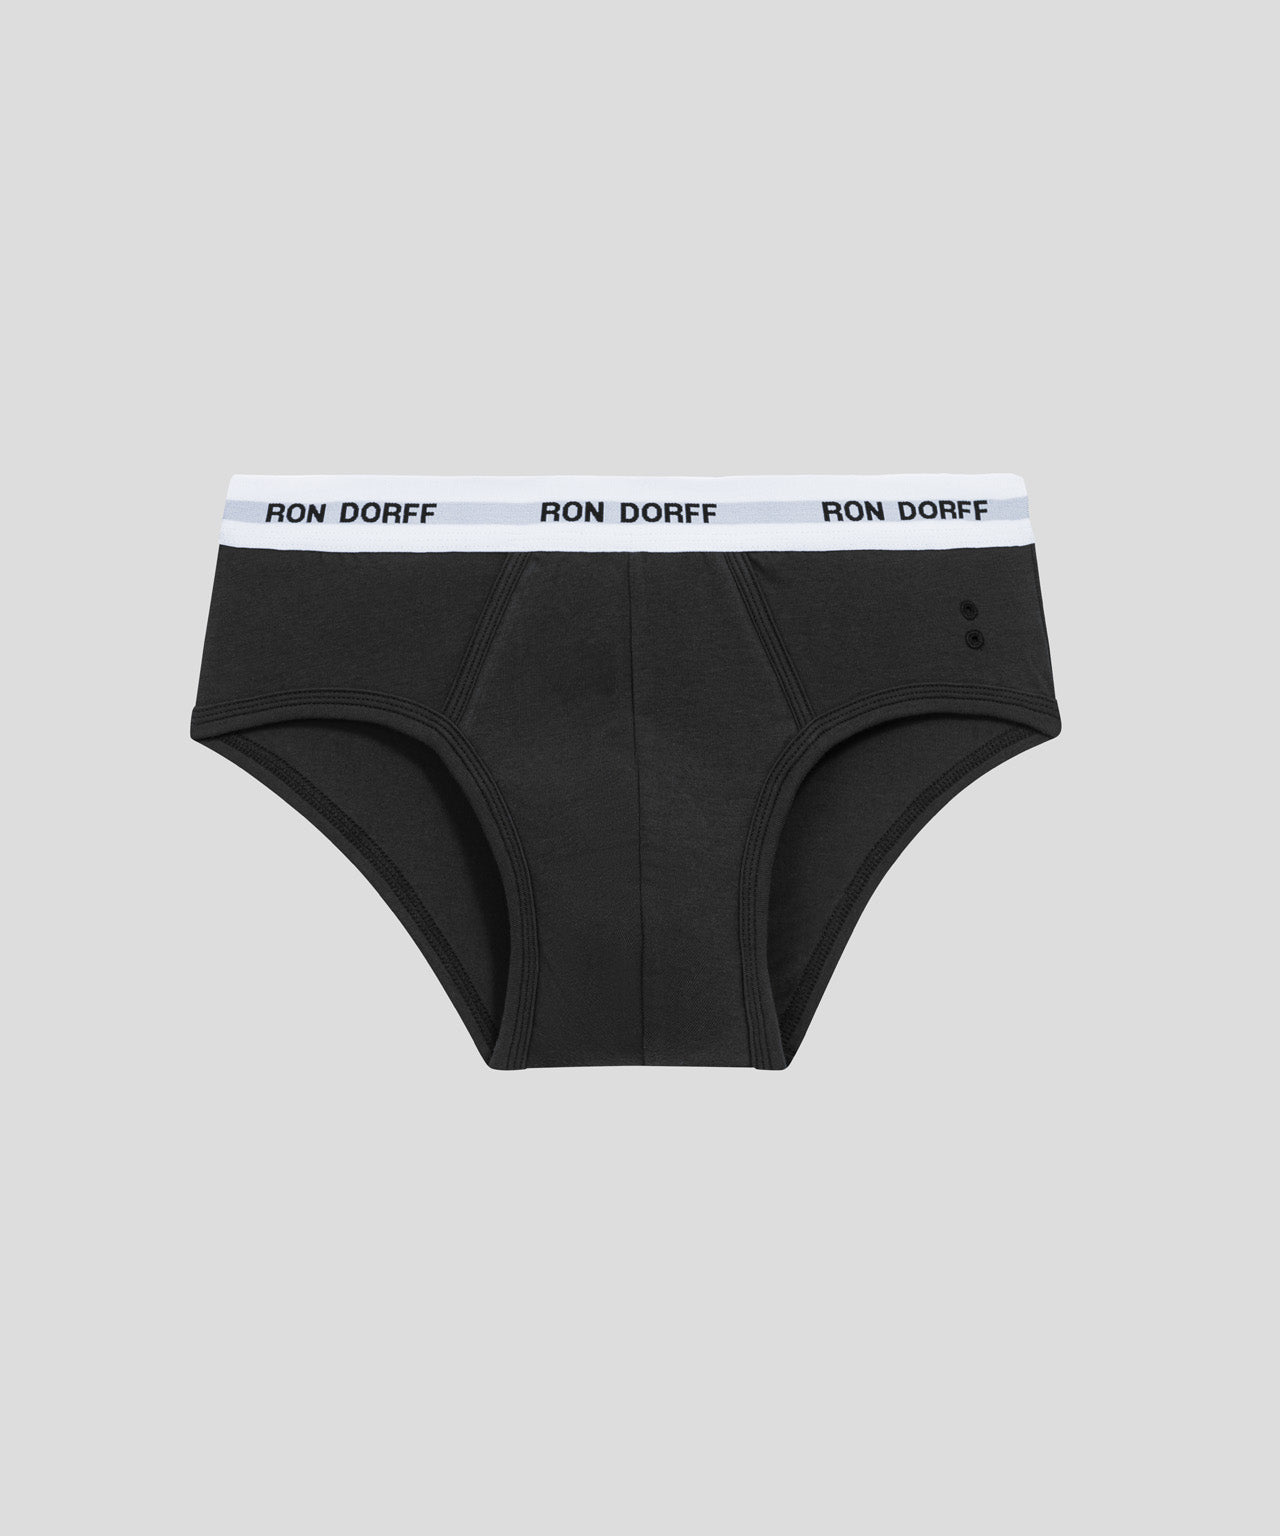 RON DORFF - The iconic no frills, no logo Y-front briefs. #RonDorff  #Menswear #Underwear #Briefs #YfrontBriefs #ElliottReeder @elliottreeder  @justin_fonteneau